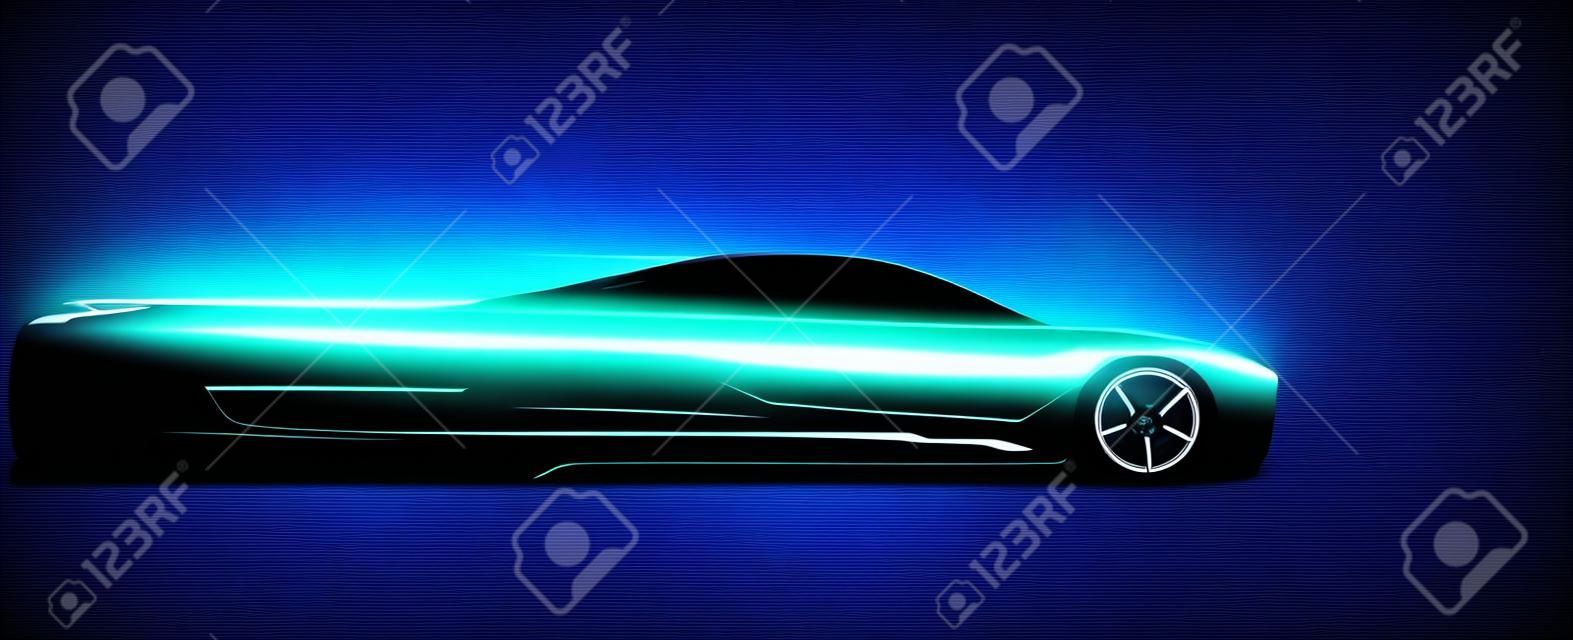 Silhouette de voiture de sport rougeoyante au néon vue latérale. Illustration vectorielle abstraite de style moderne eps 10.